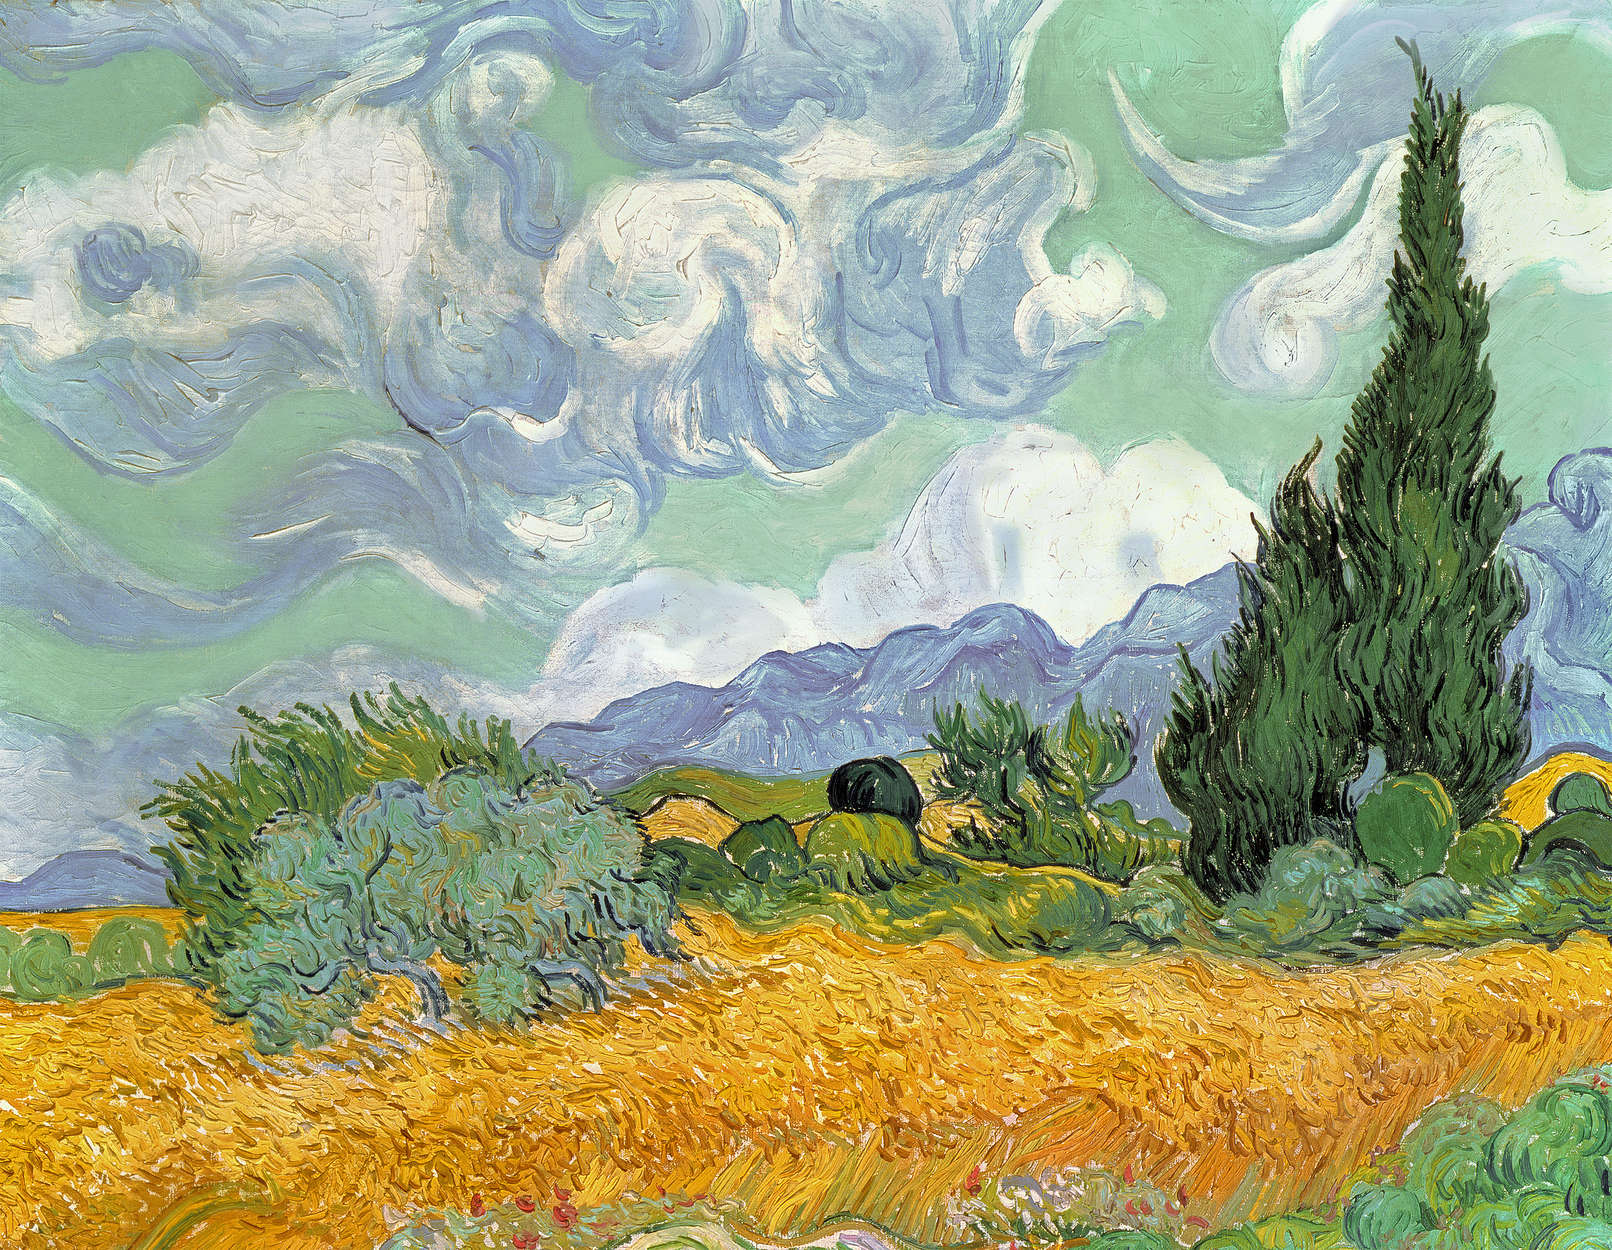             Korenveld met cypressen" muurschildering van Vincent van Gogh
        